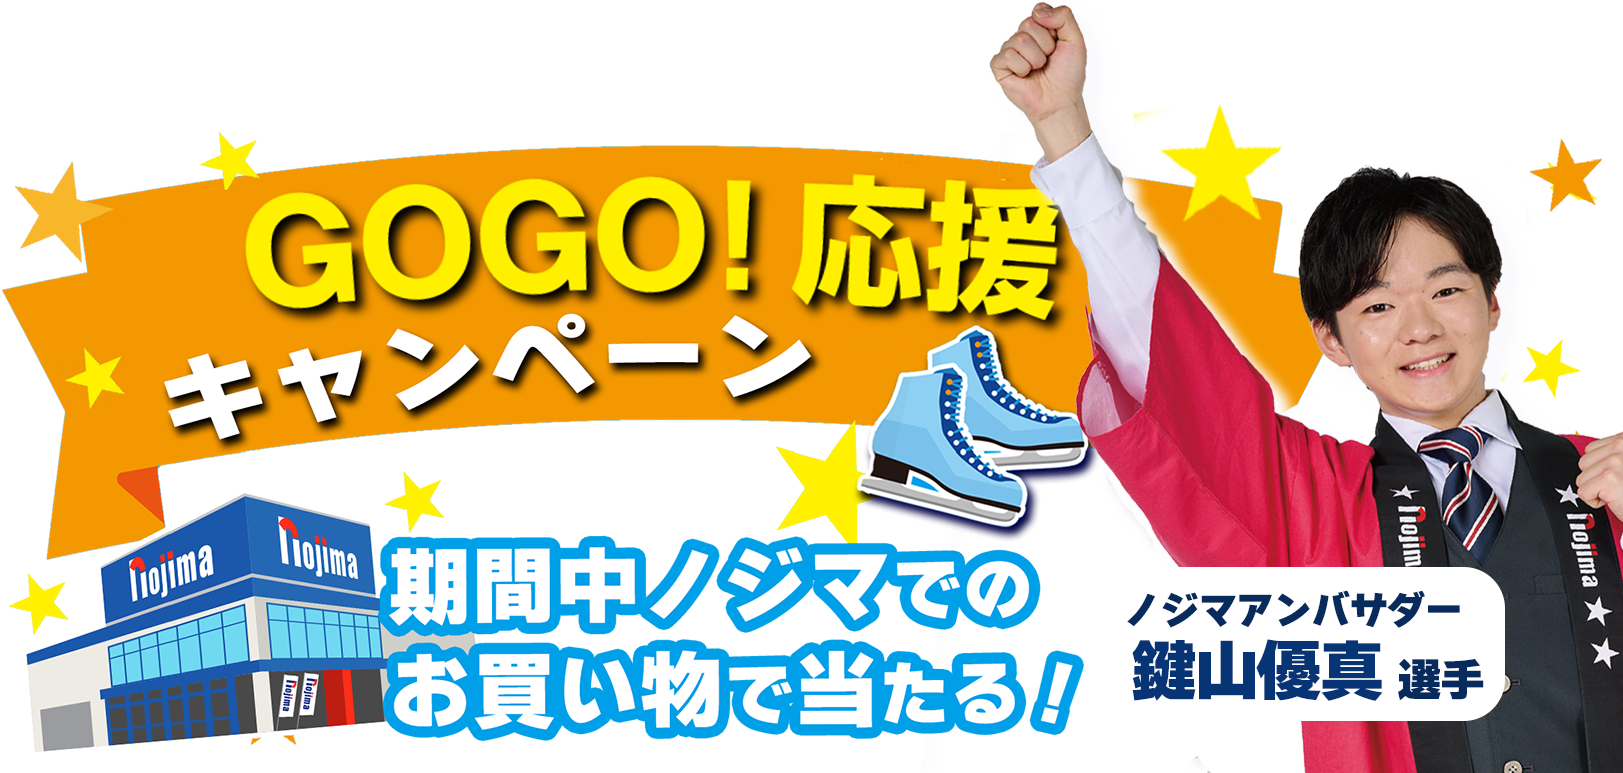 フィギュア鍵山優真選手 GO！GO！応援キャンペーンのTOP画